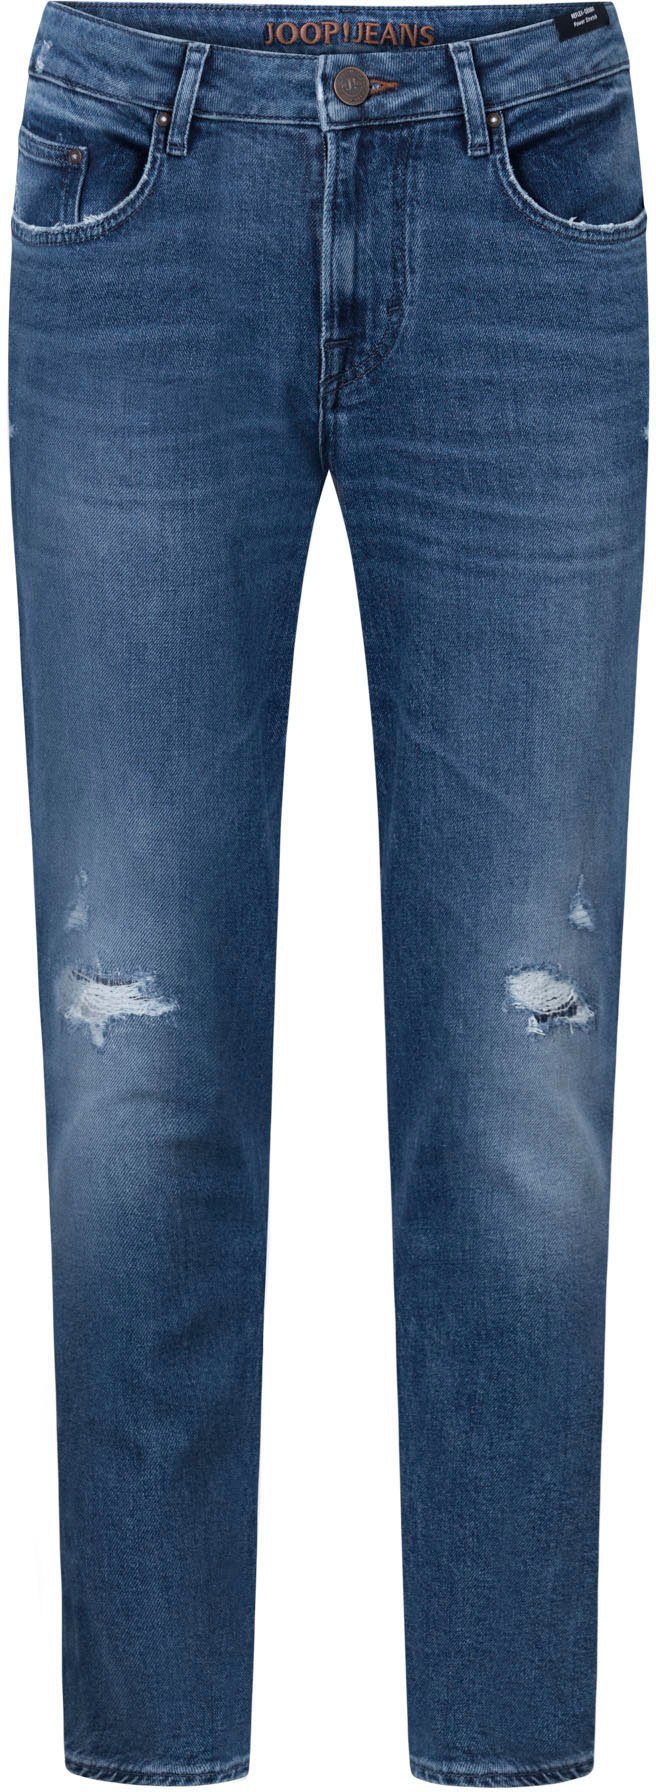 Joop Jeans Straight jeans in 5-pocketsmodel